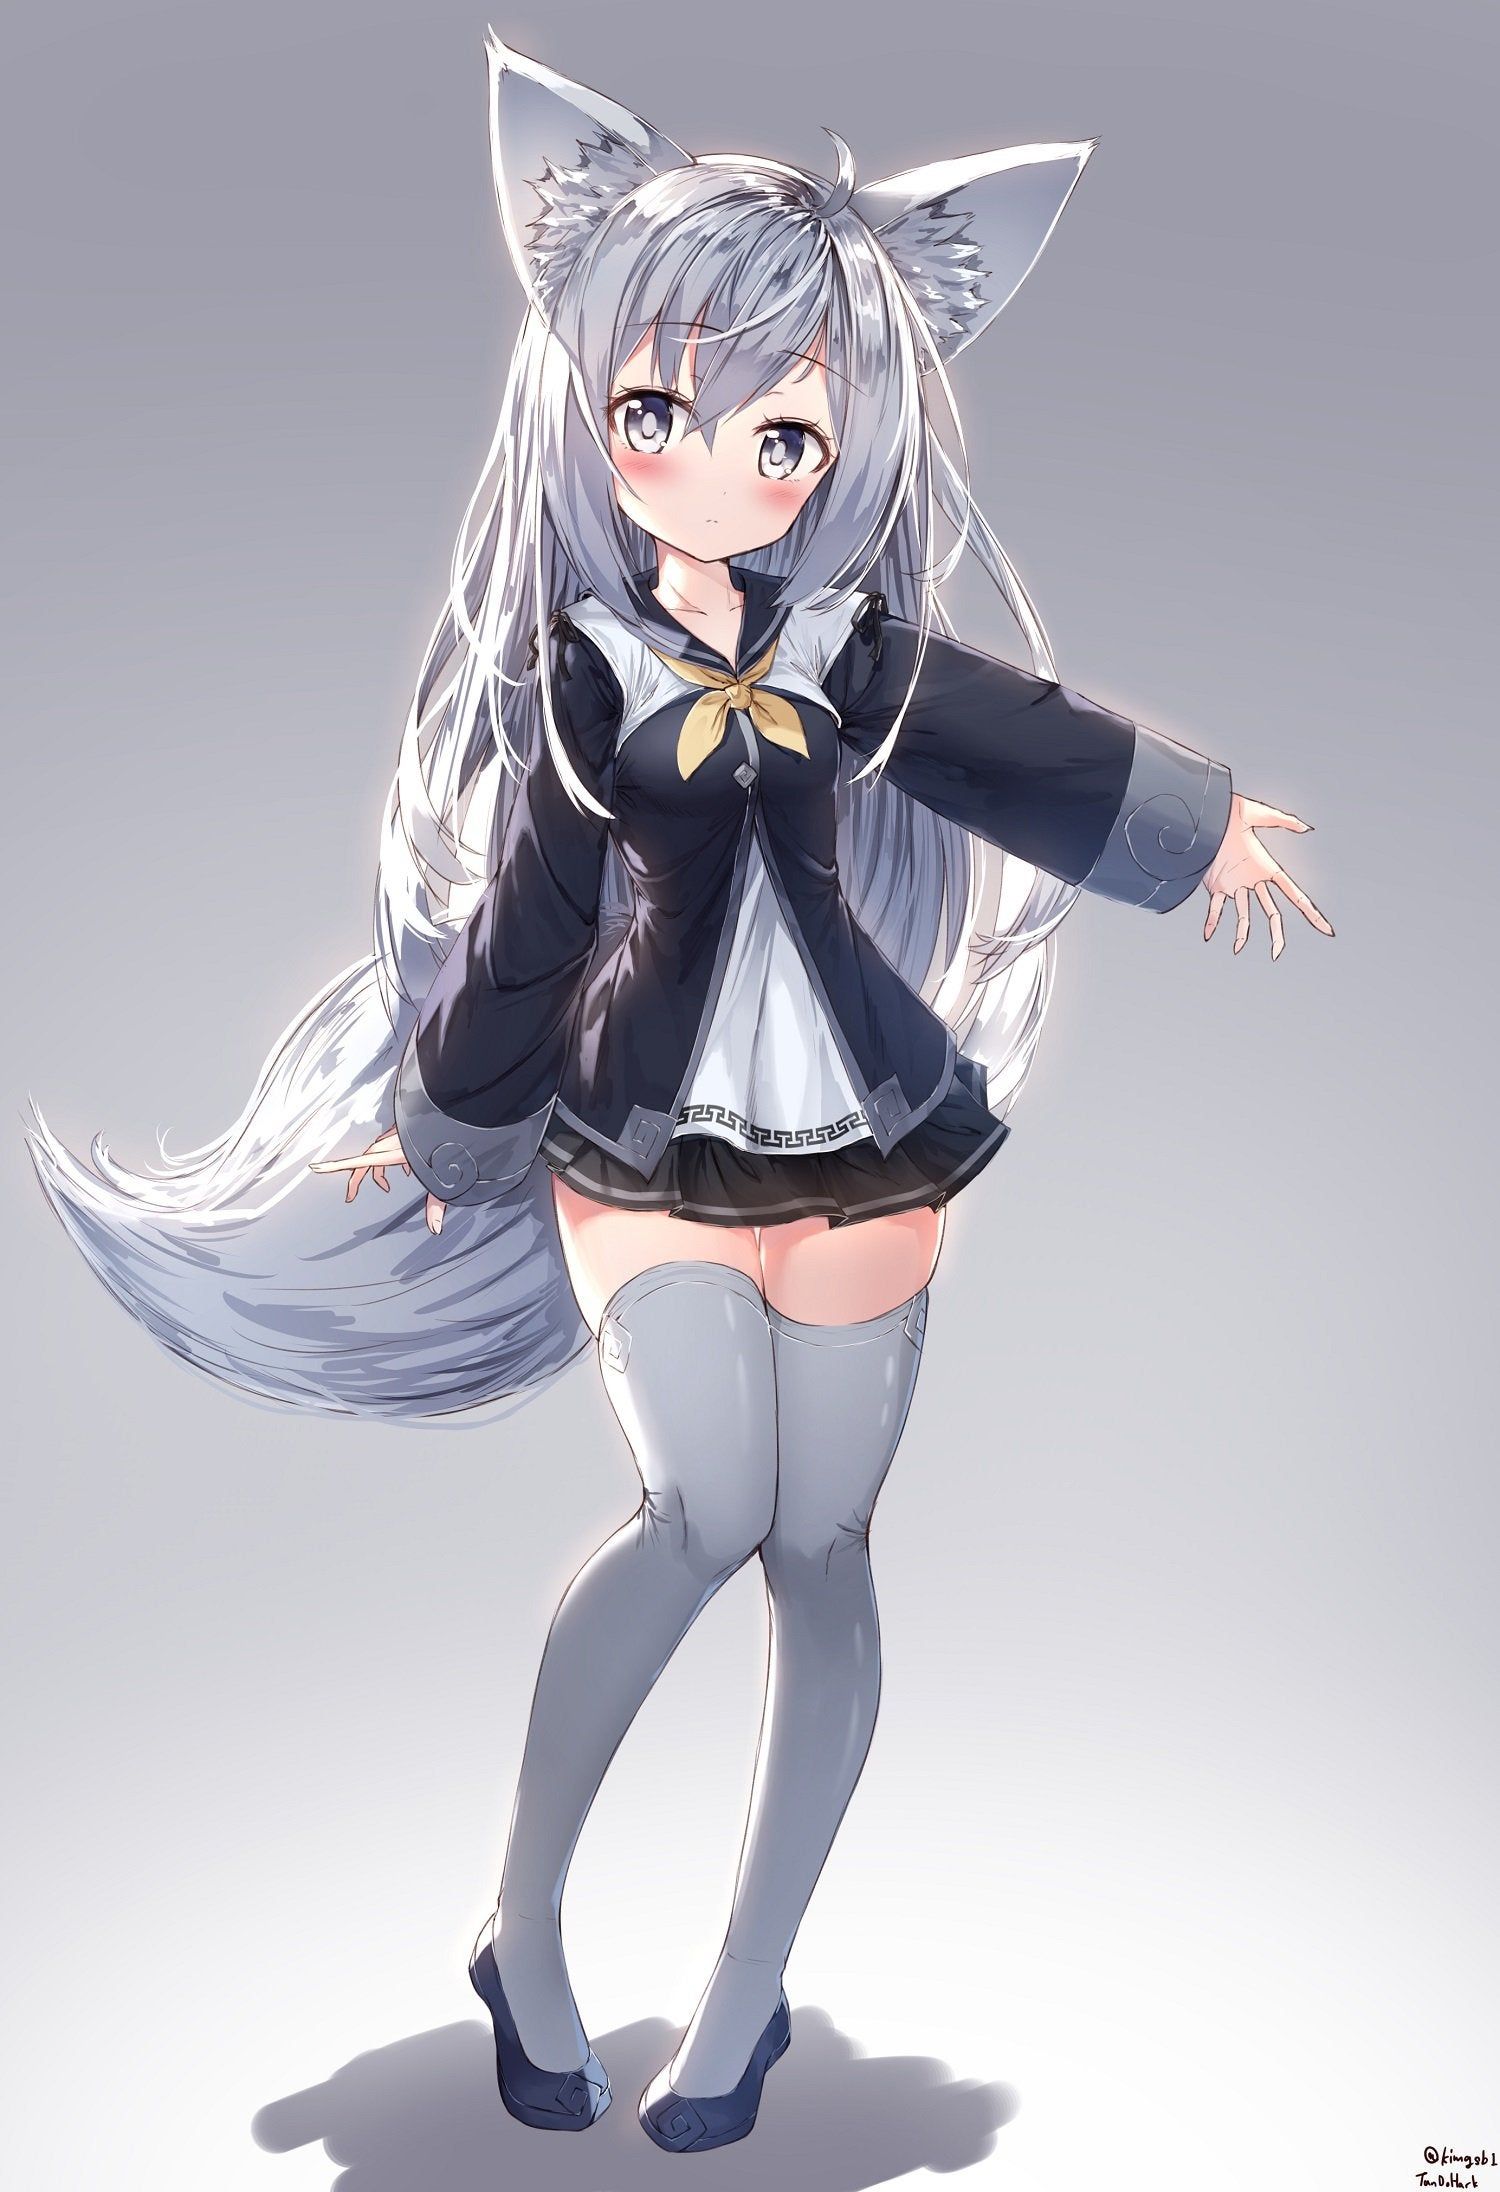 Materi Pelajaran 6: Anime Fox Cute Girl